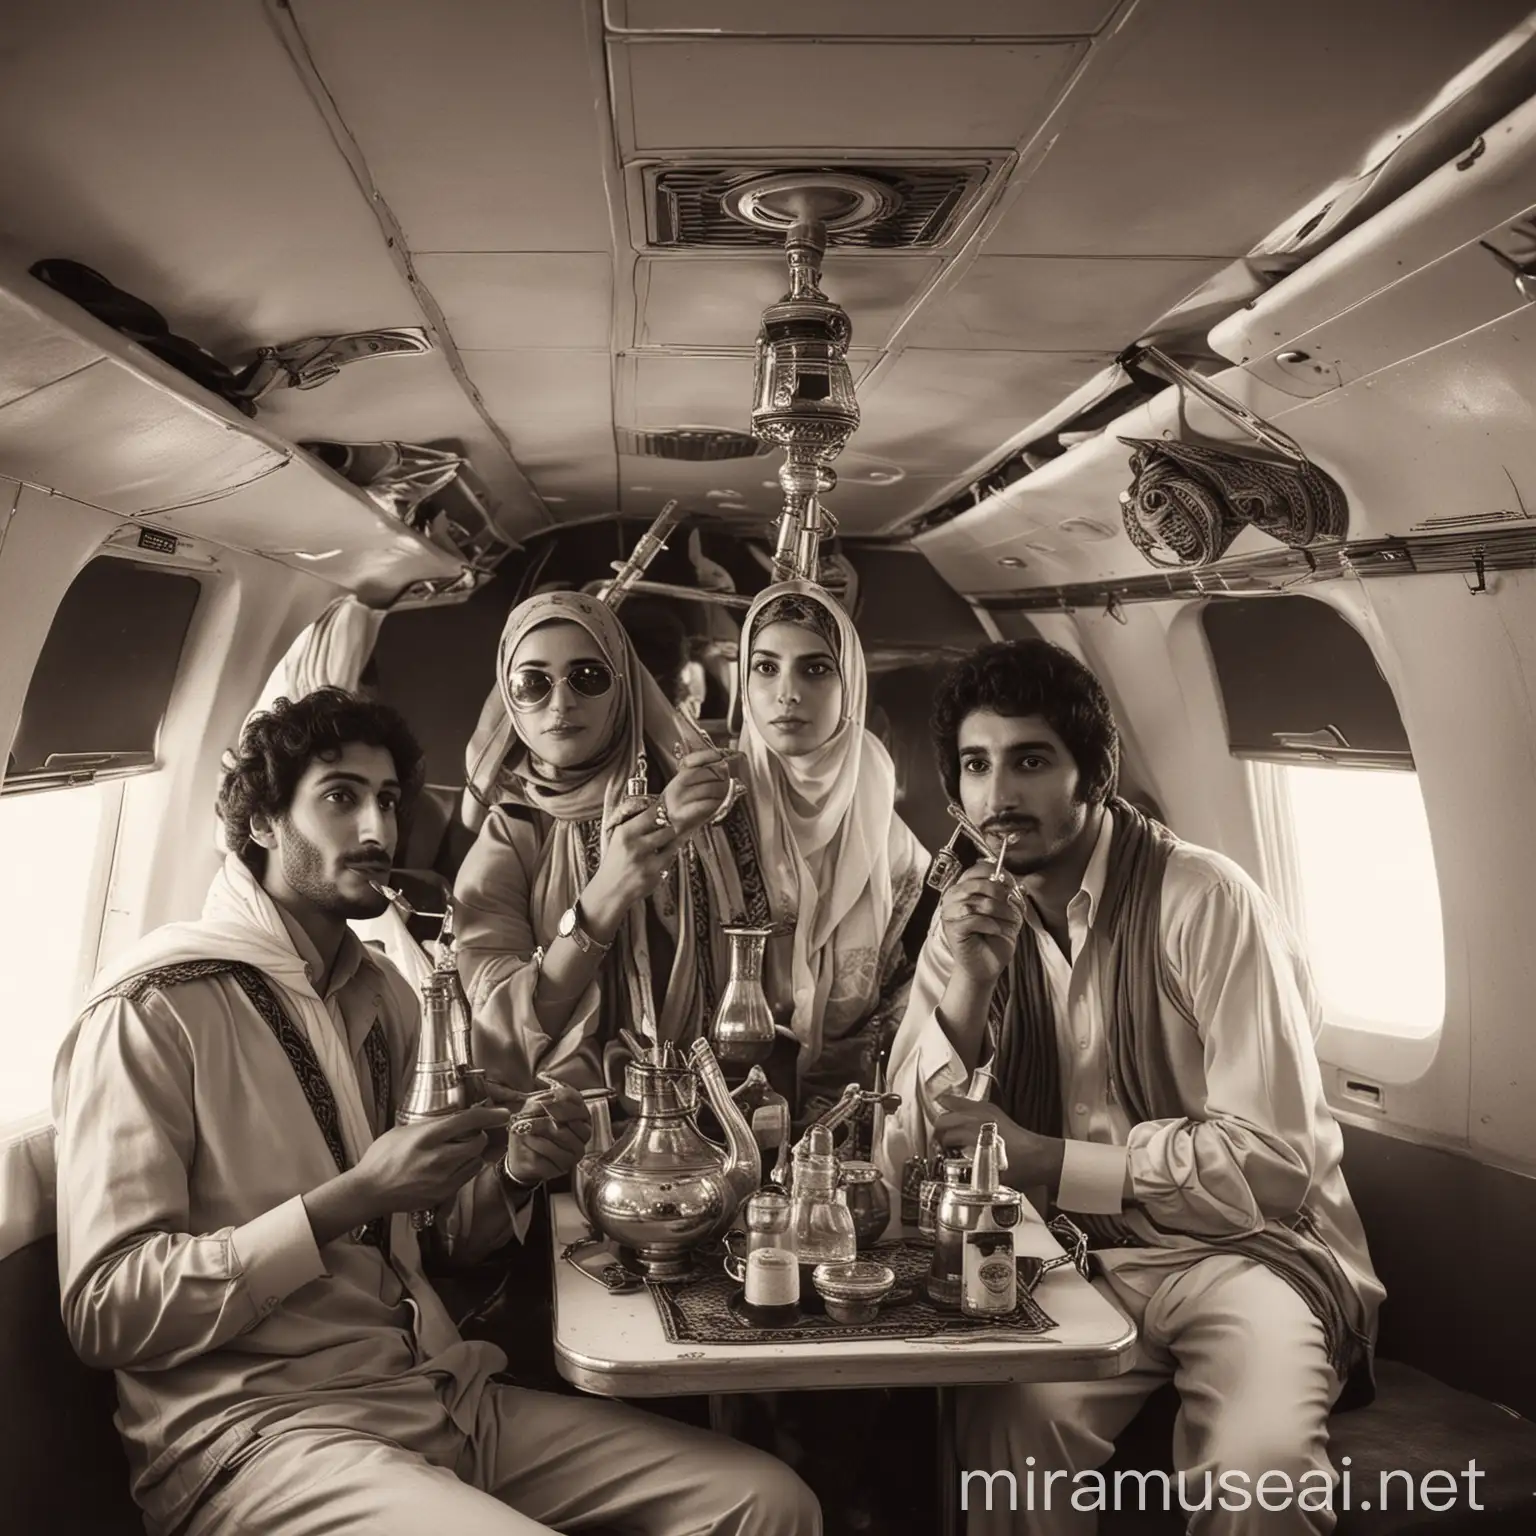 Vintage Arab Airplane Shisha Session in Monochrome